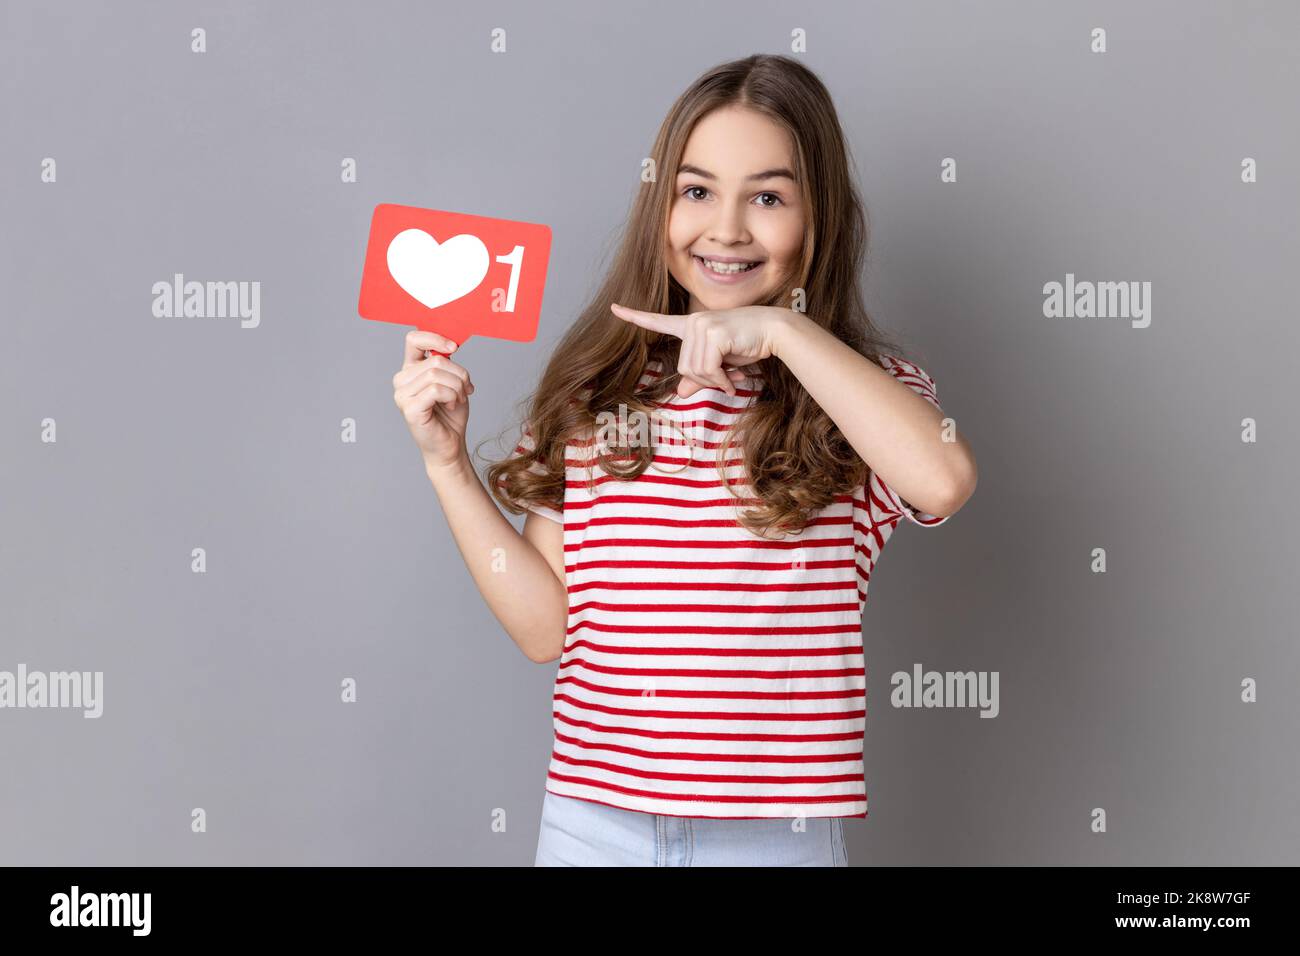 Portrait d'une adorable petite fille souriante portant un T-shirt rayé pointant vers le cœur comme une icône, recommandant de cliquer sur le bouton des médias sociaux. Prise de vue en studio isolée sur fond gris. Banque D'Images